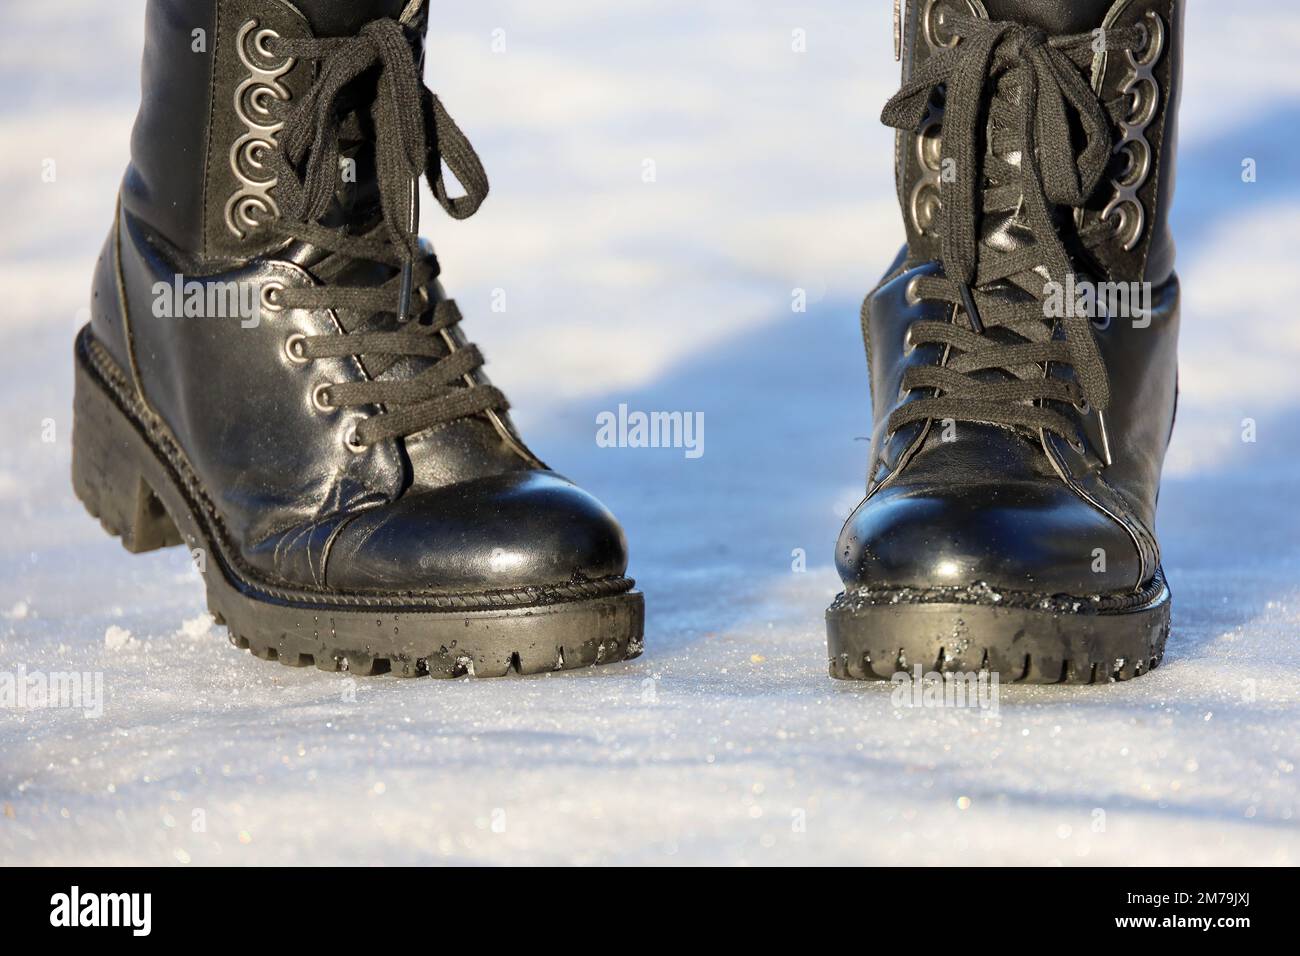 Weibliche Beine in schwarzen Leder Schnürstiefeln auf Schnee. Frau, die auf der Winterstraße läuft, warme Schuhe für kaltes Wetter Stockfoto